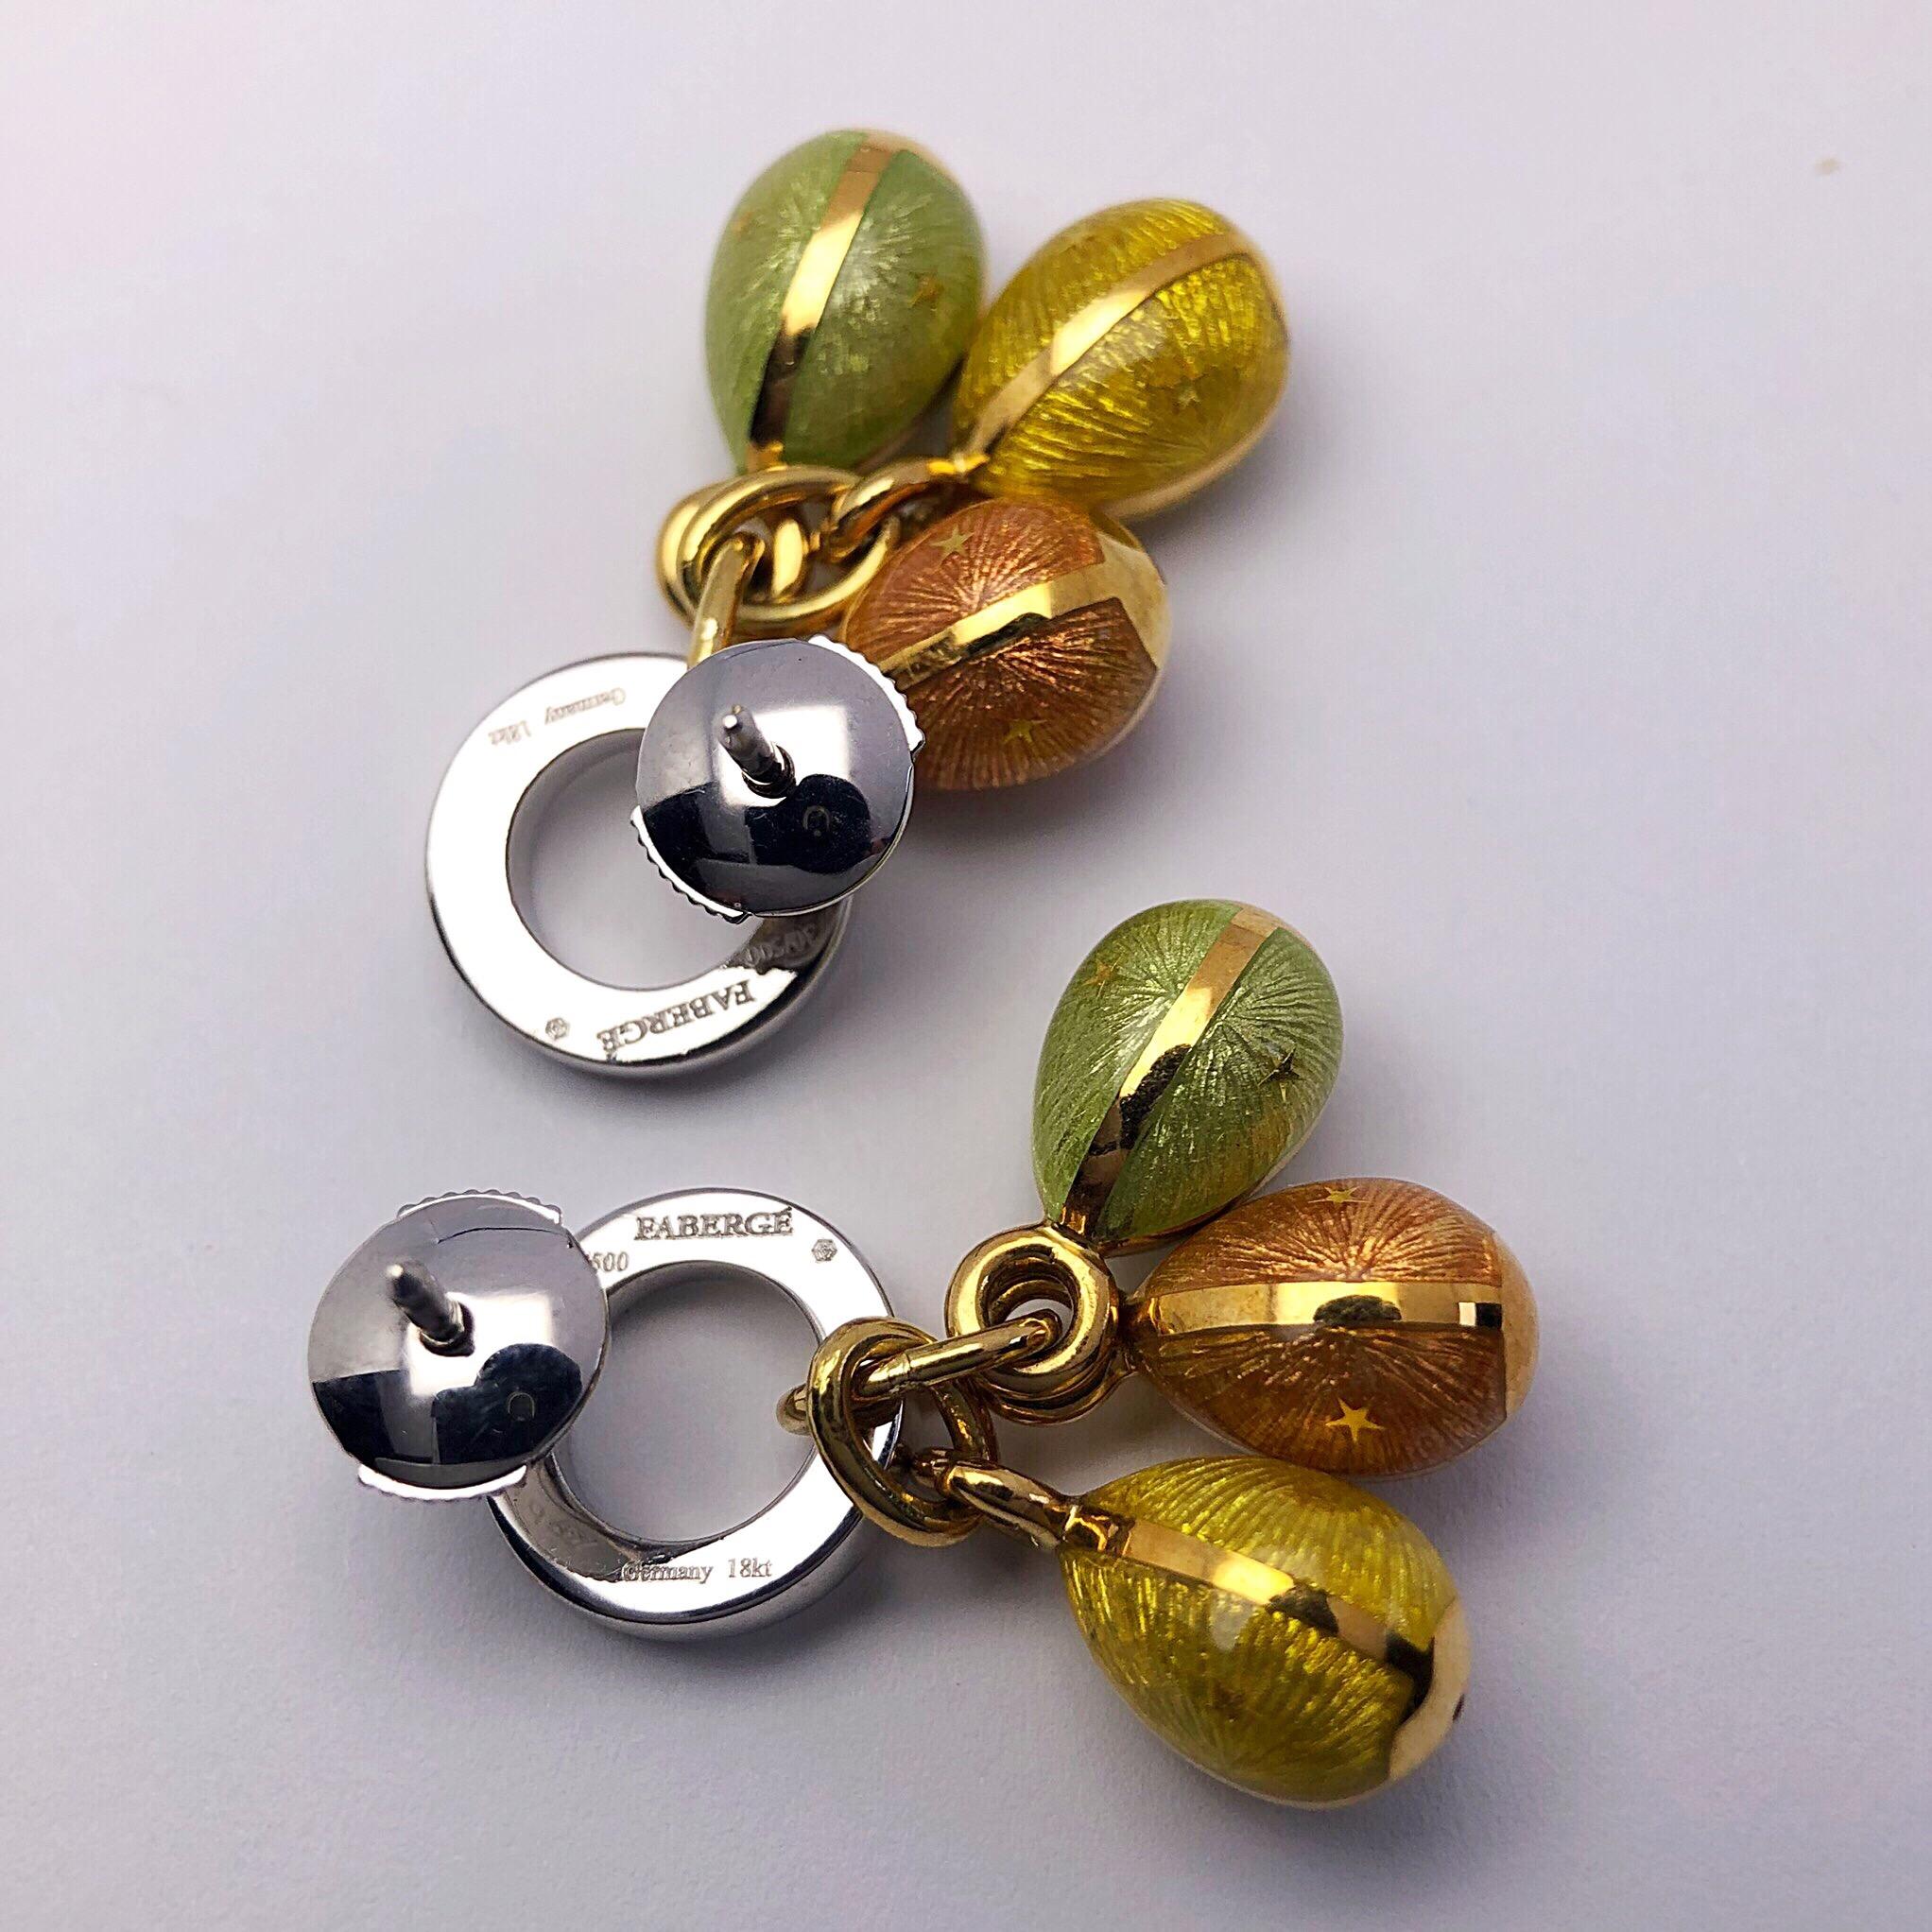 Diese modernen Faberge-Ohrringe aus 18 Karat Gelbgold von Victor Mayer zeigen 3 hängende Eier in den Farben Pfirsich, Gelb und Mint  guilloche-Email. Die Eier hängen an einem offenen Kreis aus 18 Karat Weißgold und Diamanten. Die Ohrringe haben eine